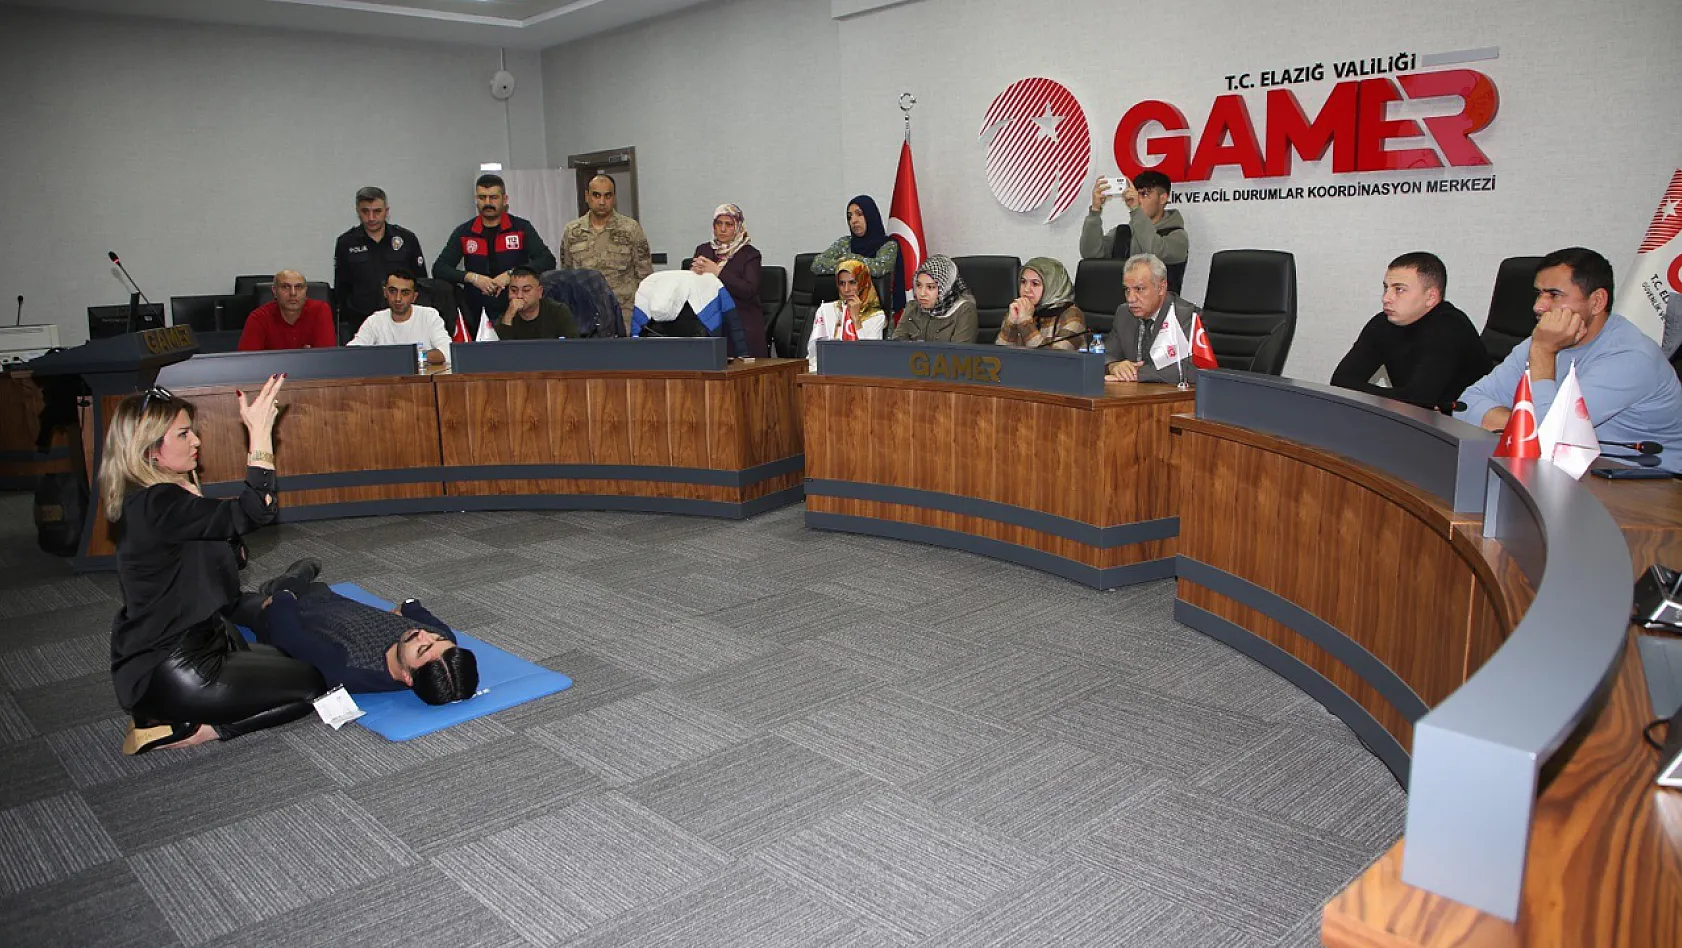 Elazığ Belediyesi Tarafından Gamer Personeline İlk Yardım Eğitimi Verildi